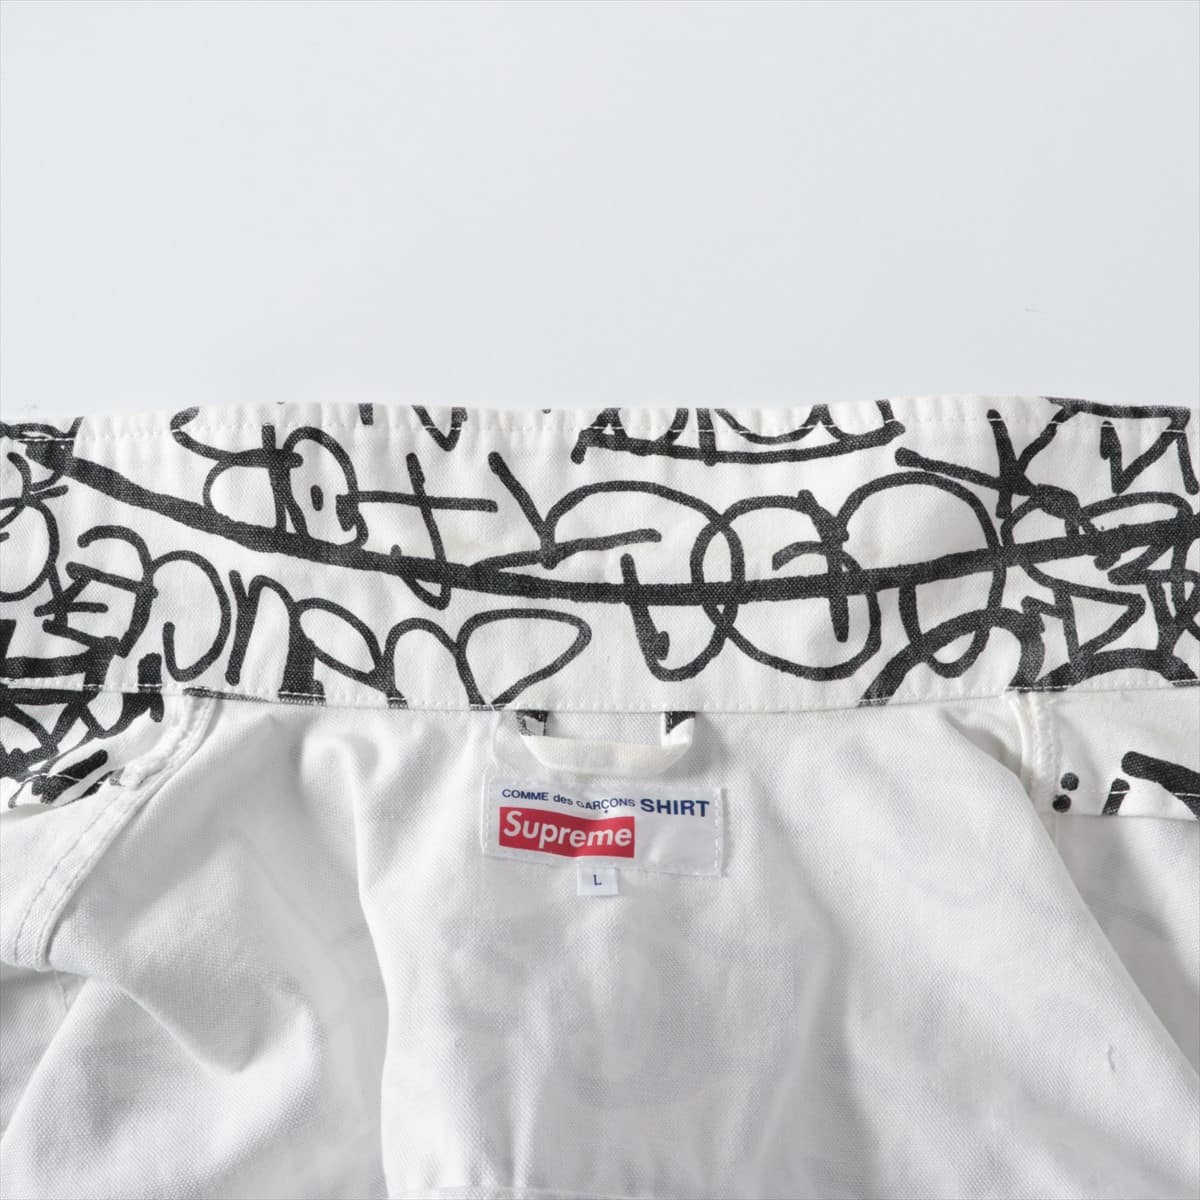 Supreme x Comme des Garcons Shirt 18AW Cotton Work jacket L Men's Black × White  Total handle